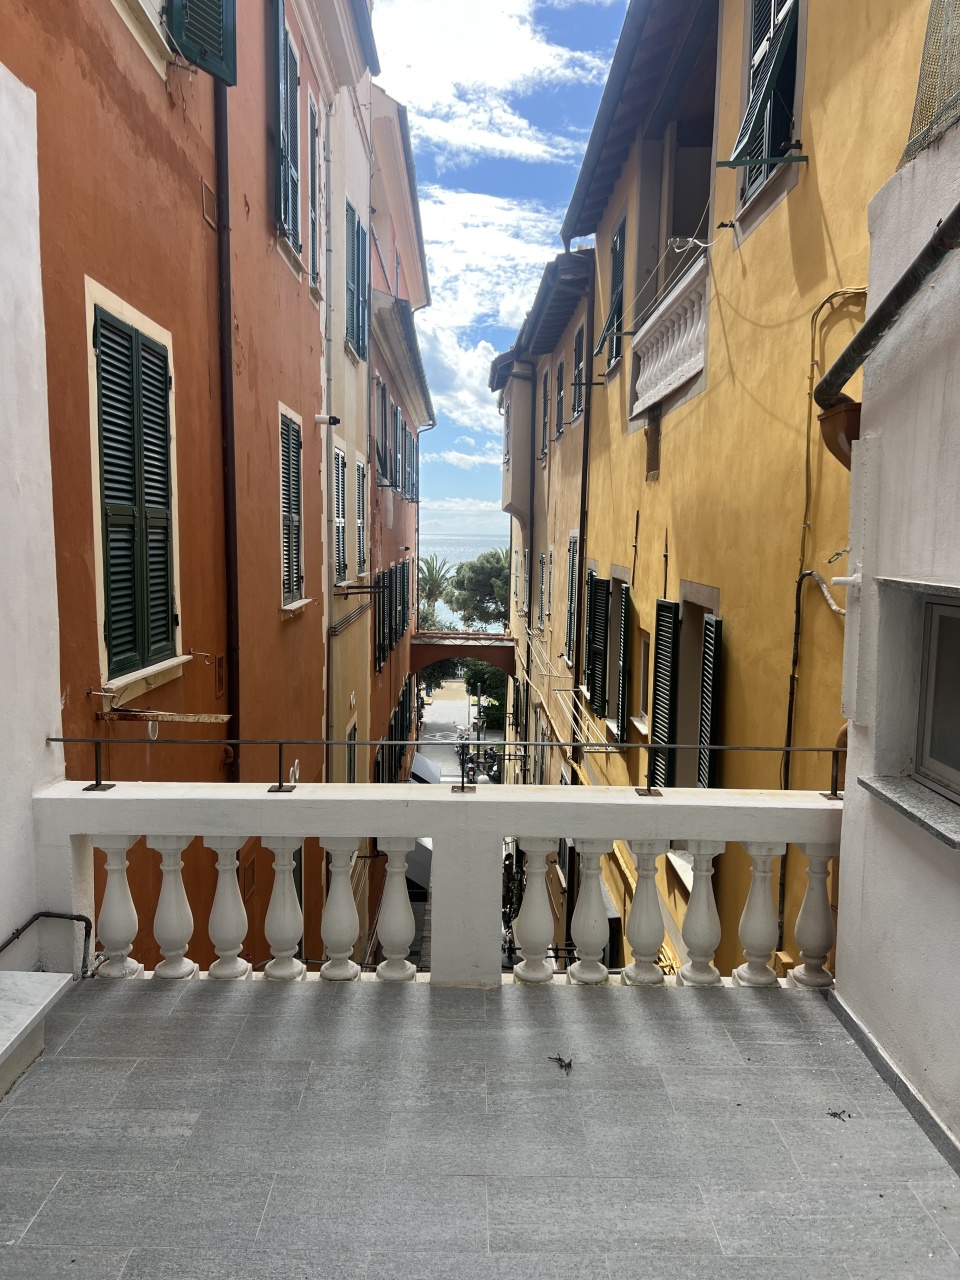 Appartamento in affitto a Finale Ligure, 3 locali, prezzo € 1.500 | PortaleAgenzieImmobiliari.it